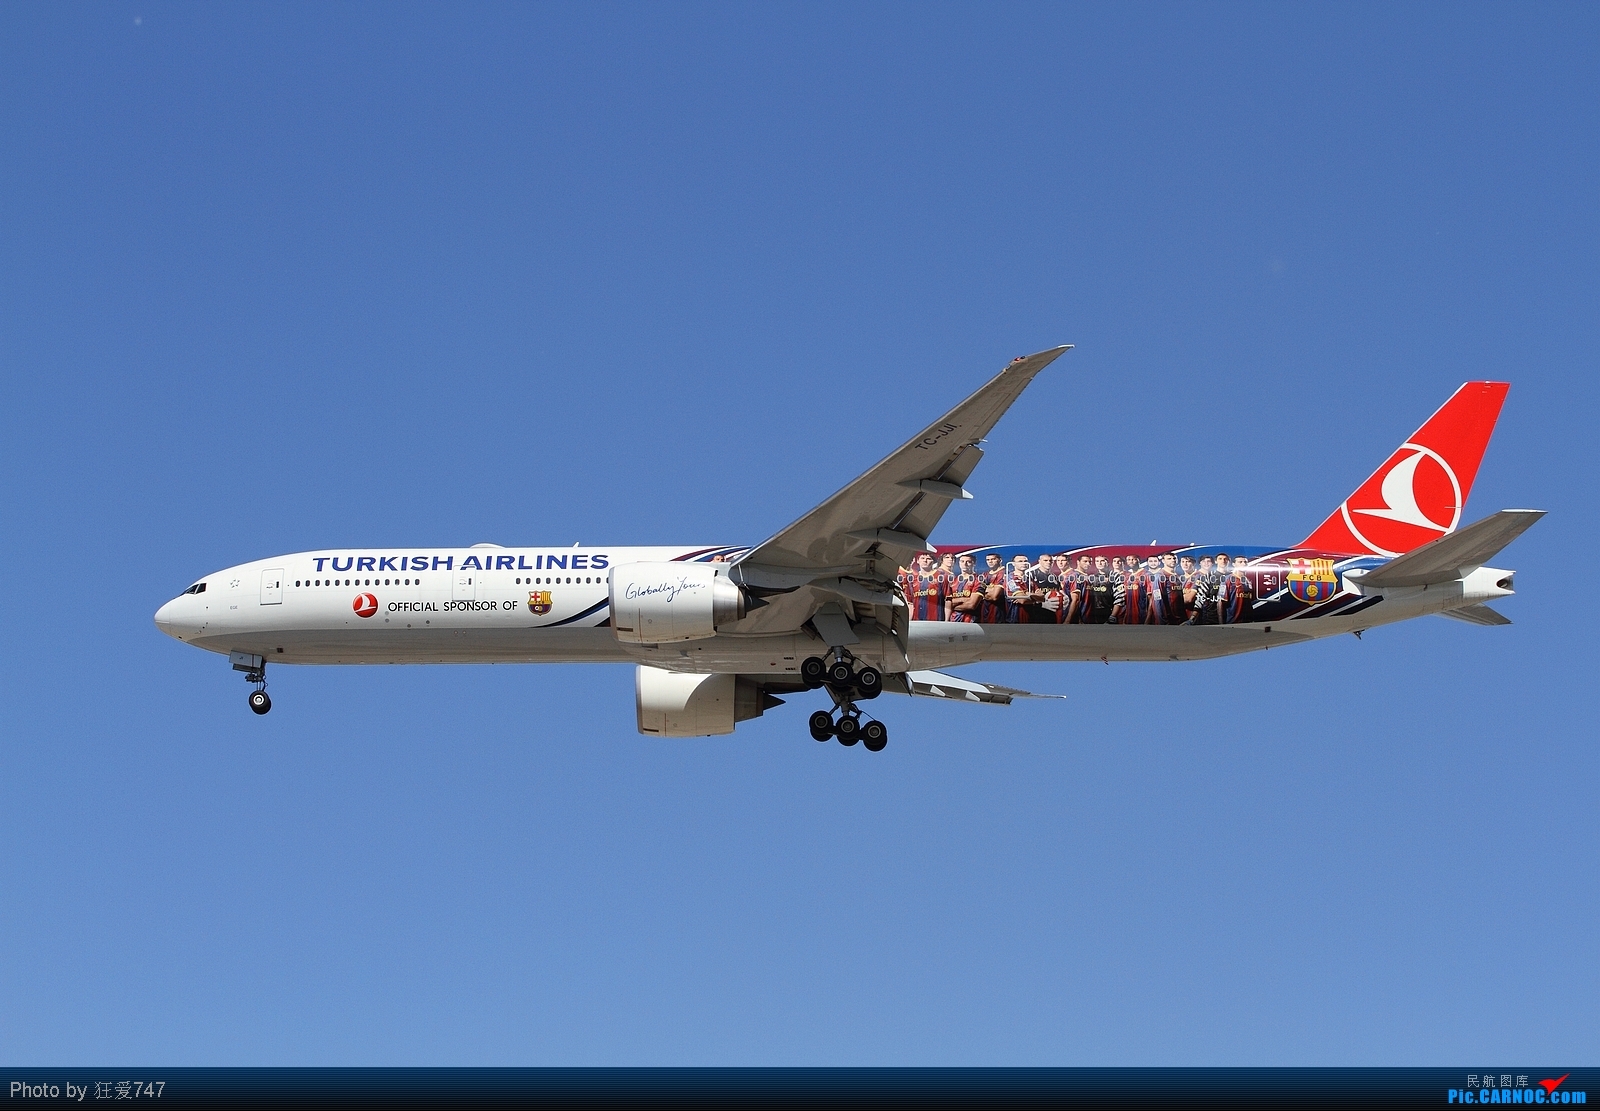 土耳其航空公司波音7879梦想飞机侧视图 编辑类库存照片. 图片 包括有 引擎, 如同, 拍摄, 国际 - 191617778